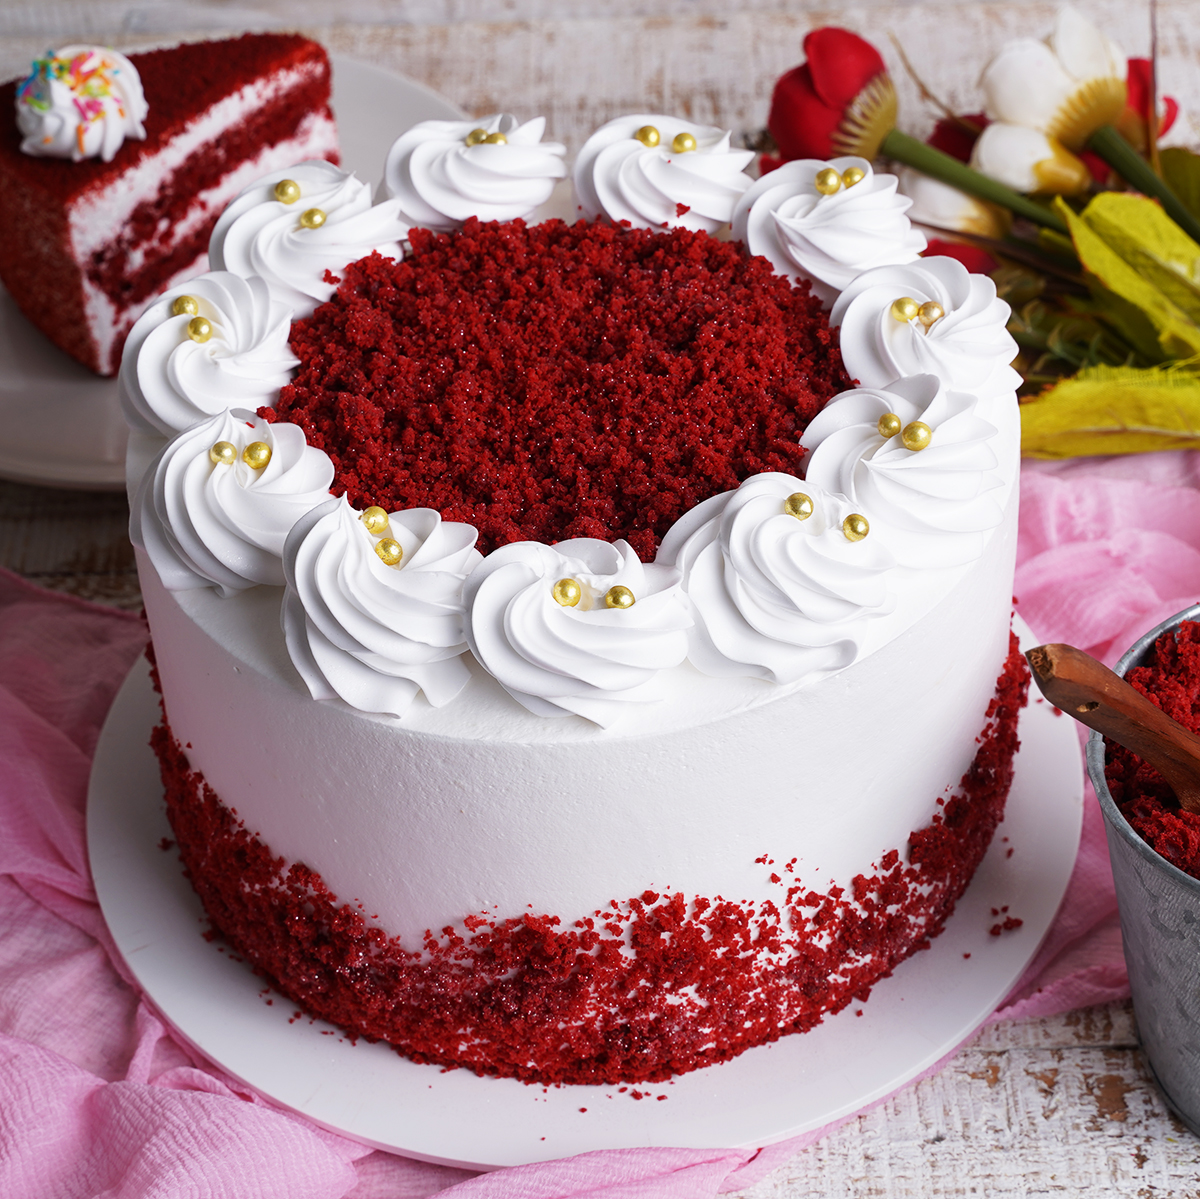 Full 4K Collection of over 999+ Stunning Red Velvet Cake Images